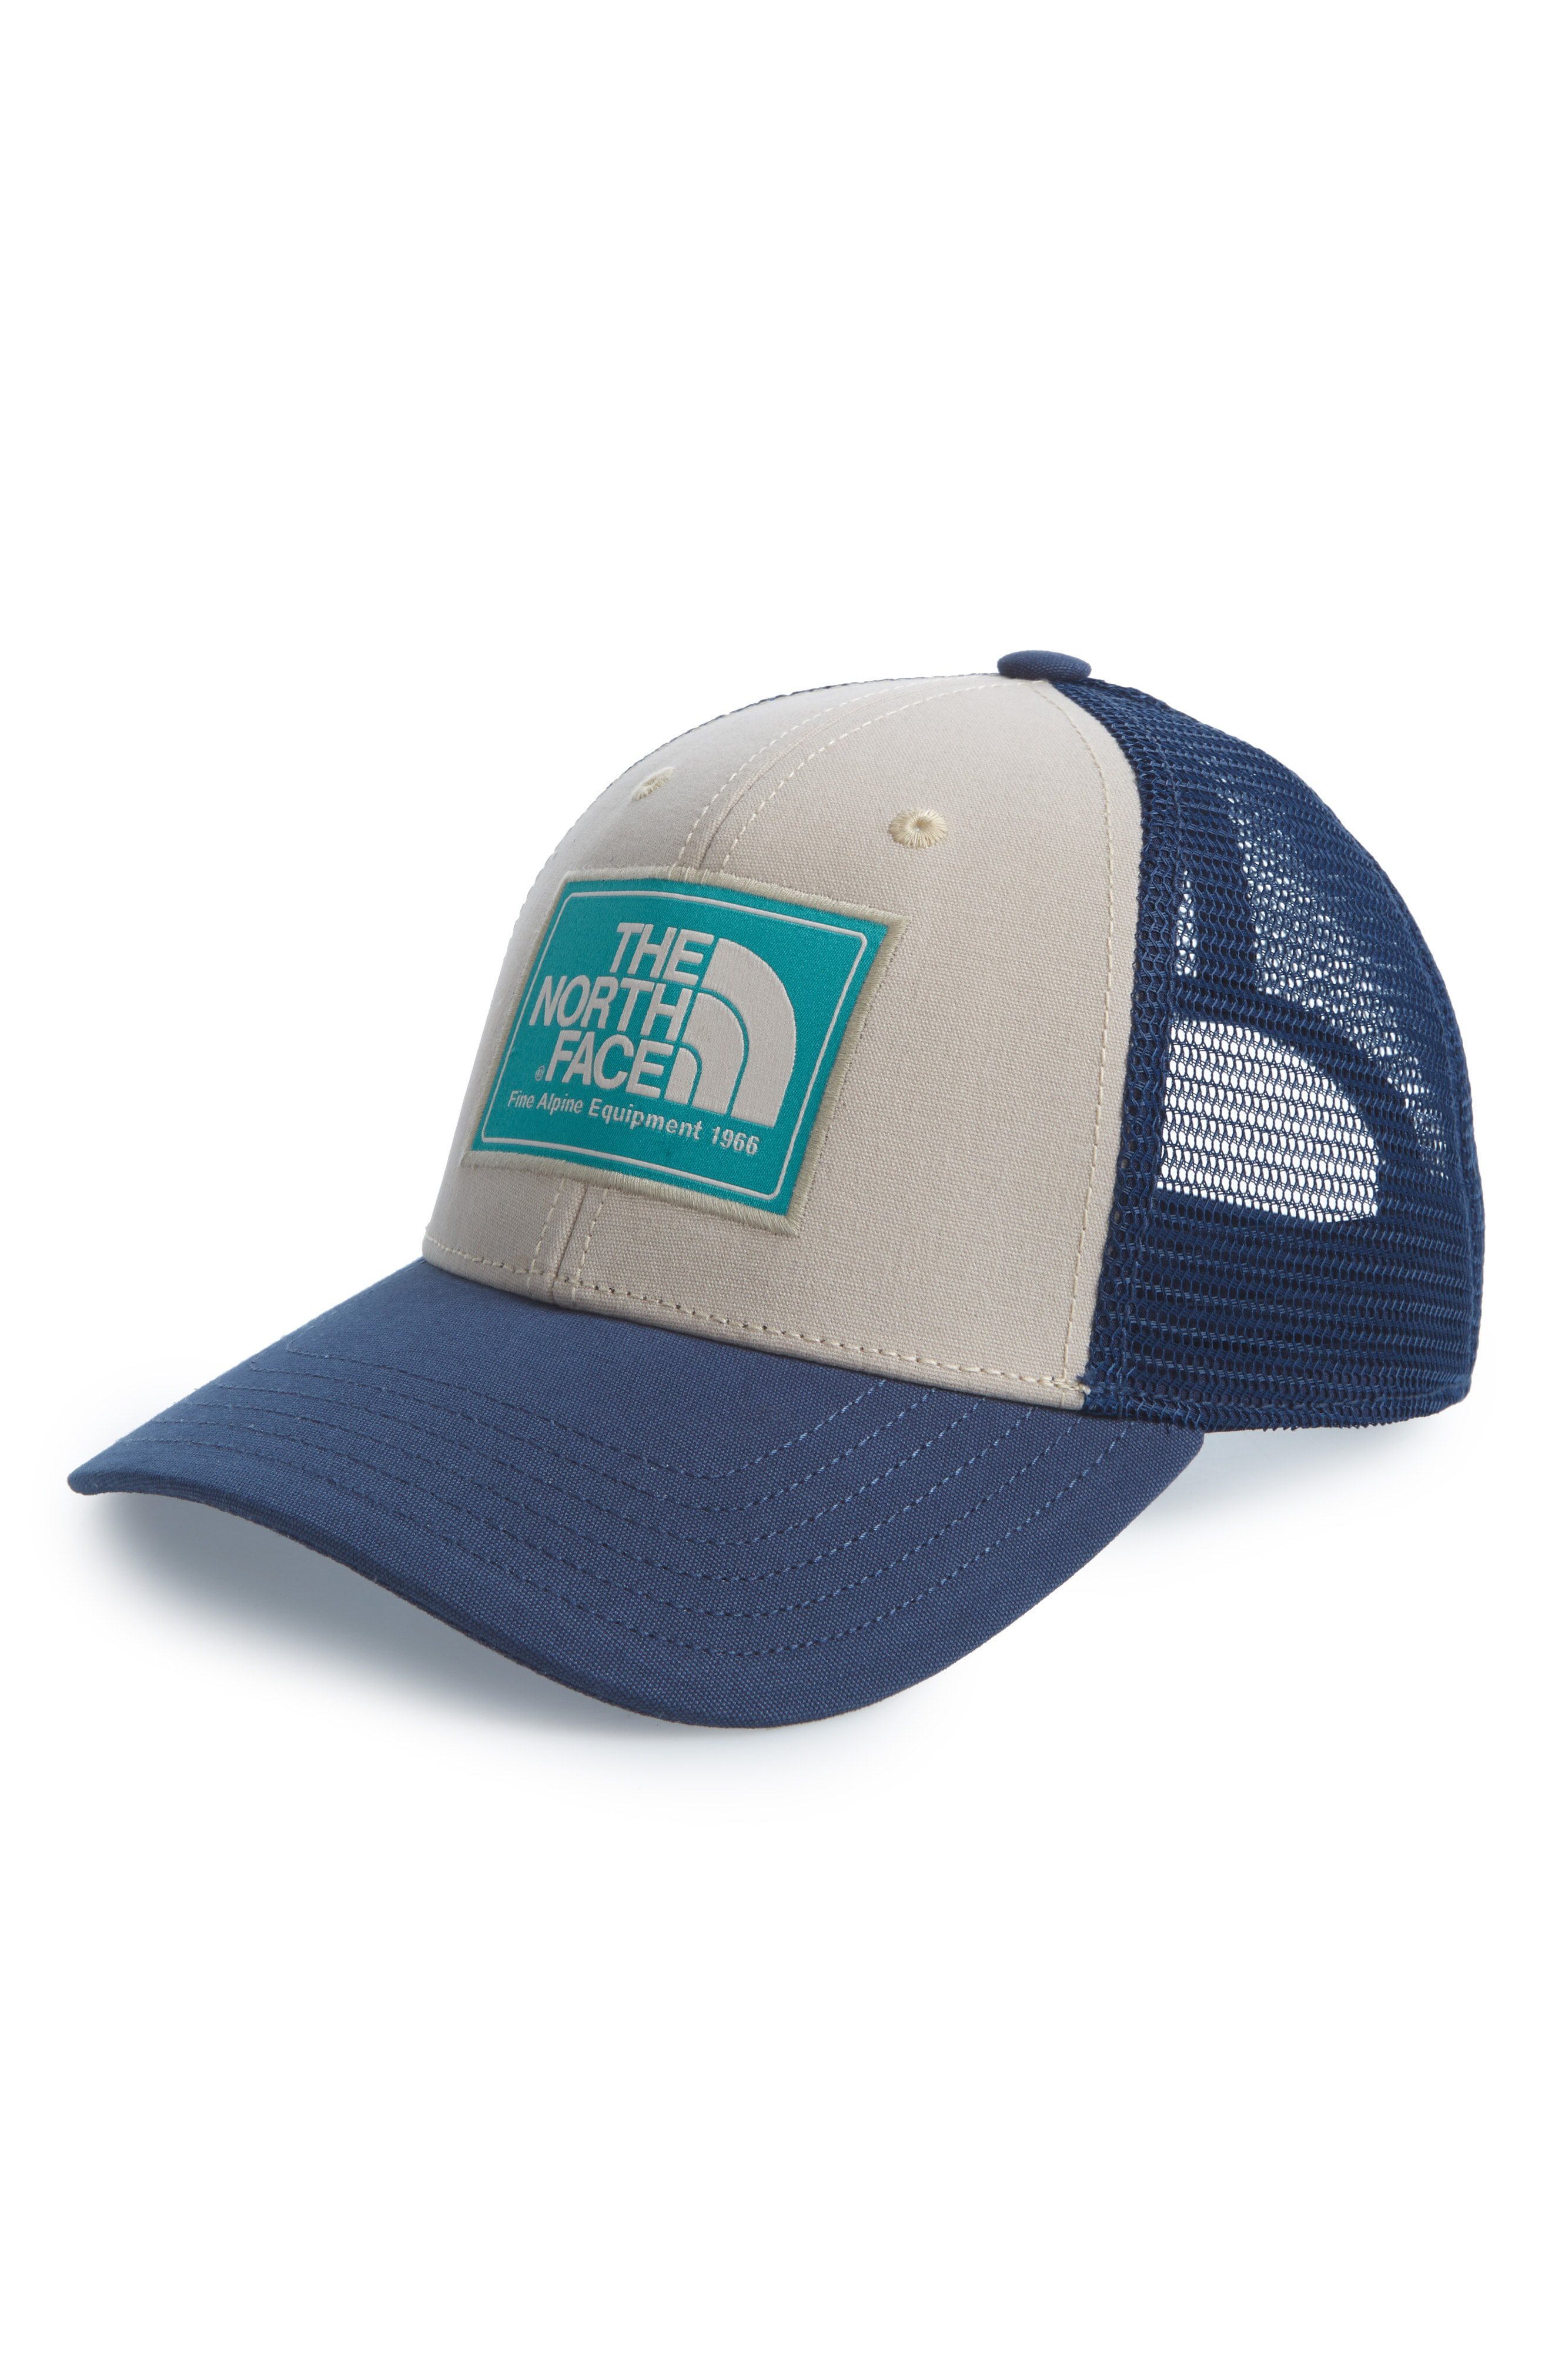 The North Face Mudder Trucker Hat - Beige In Beige/ Blue/ Green | ModeSens